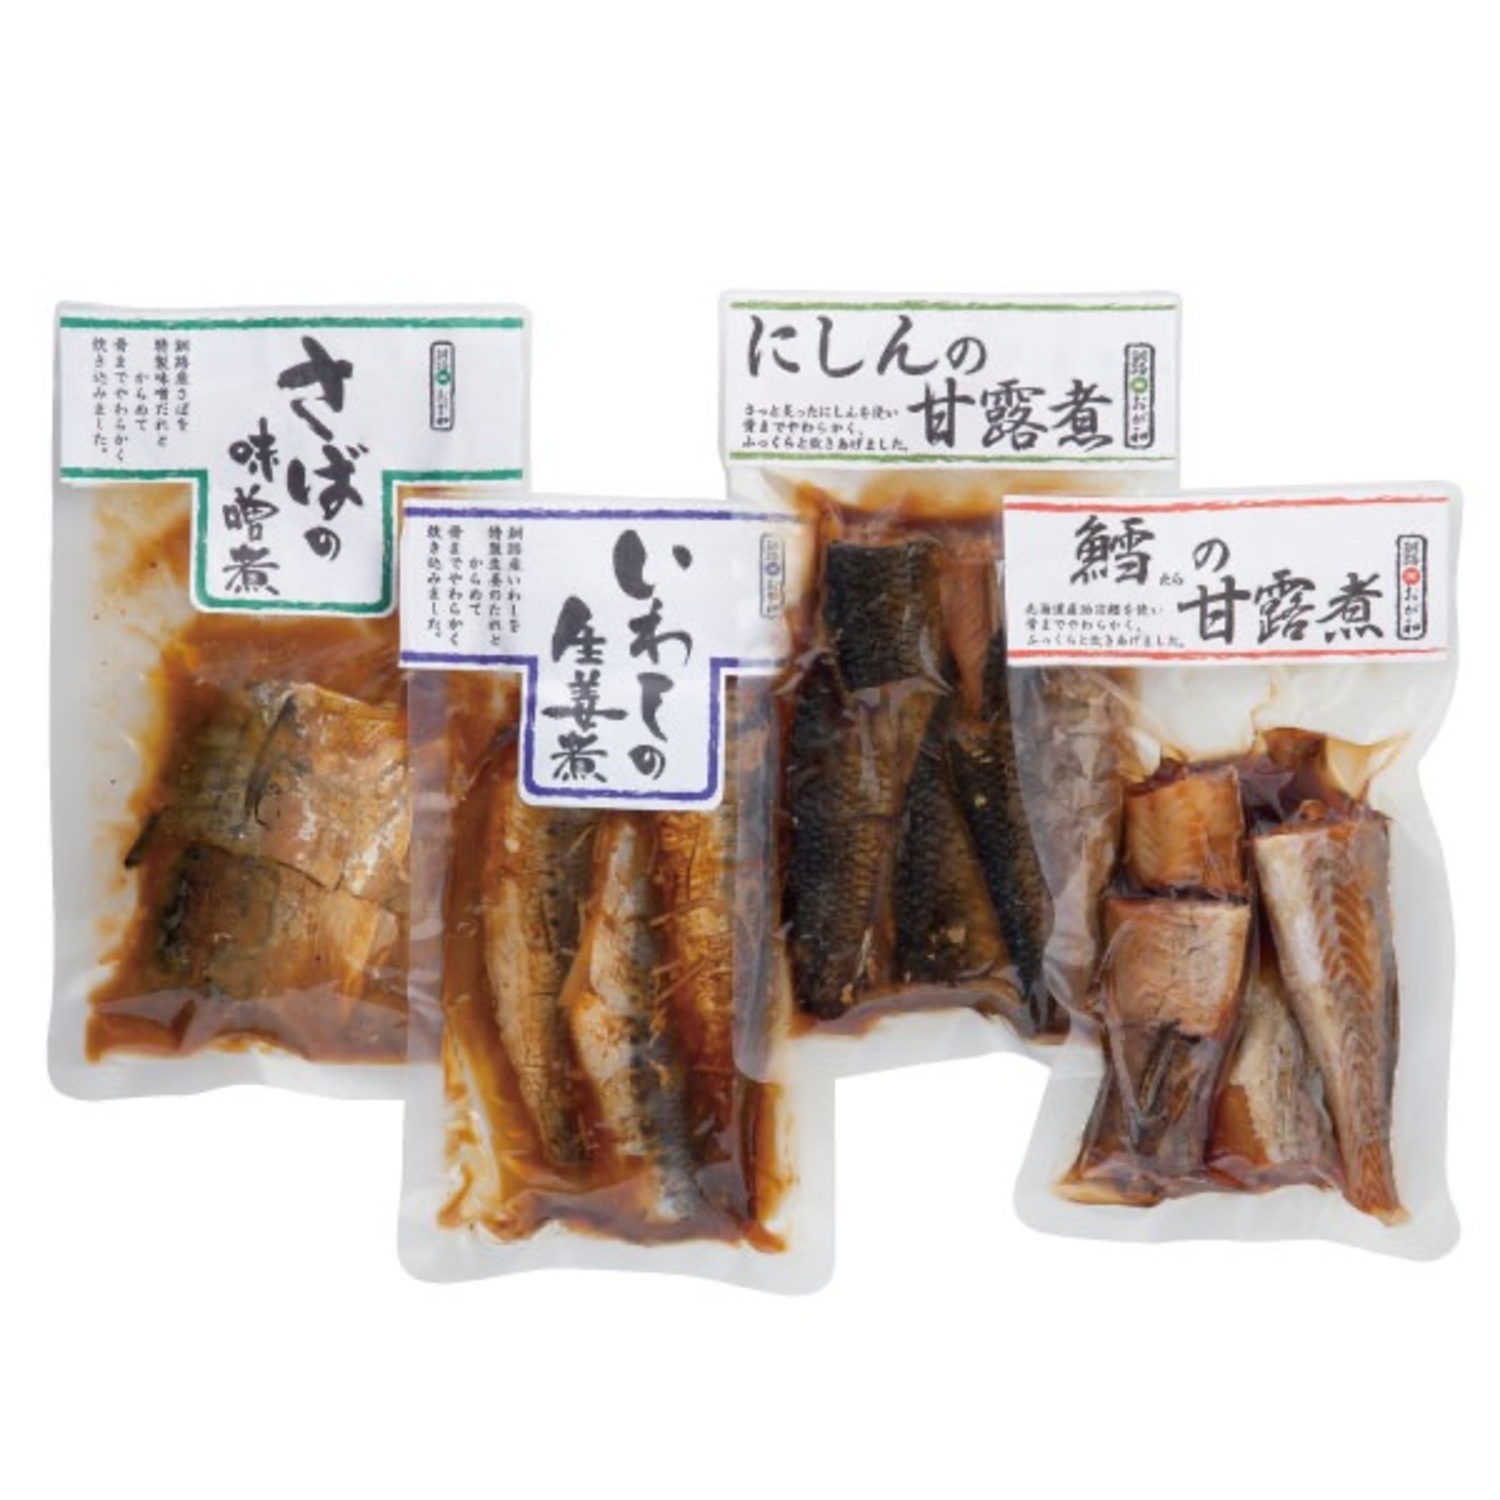 【送料無料】釧路おが和 北の煮魚4種セット